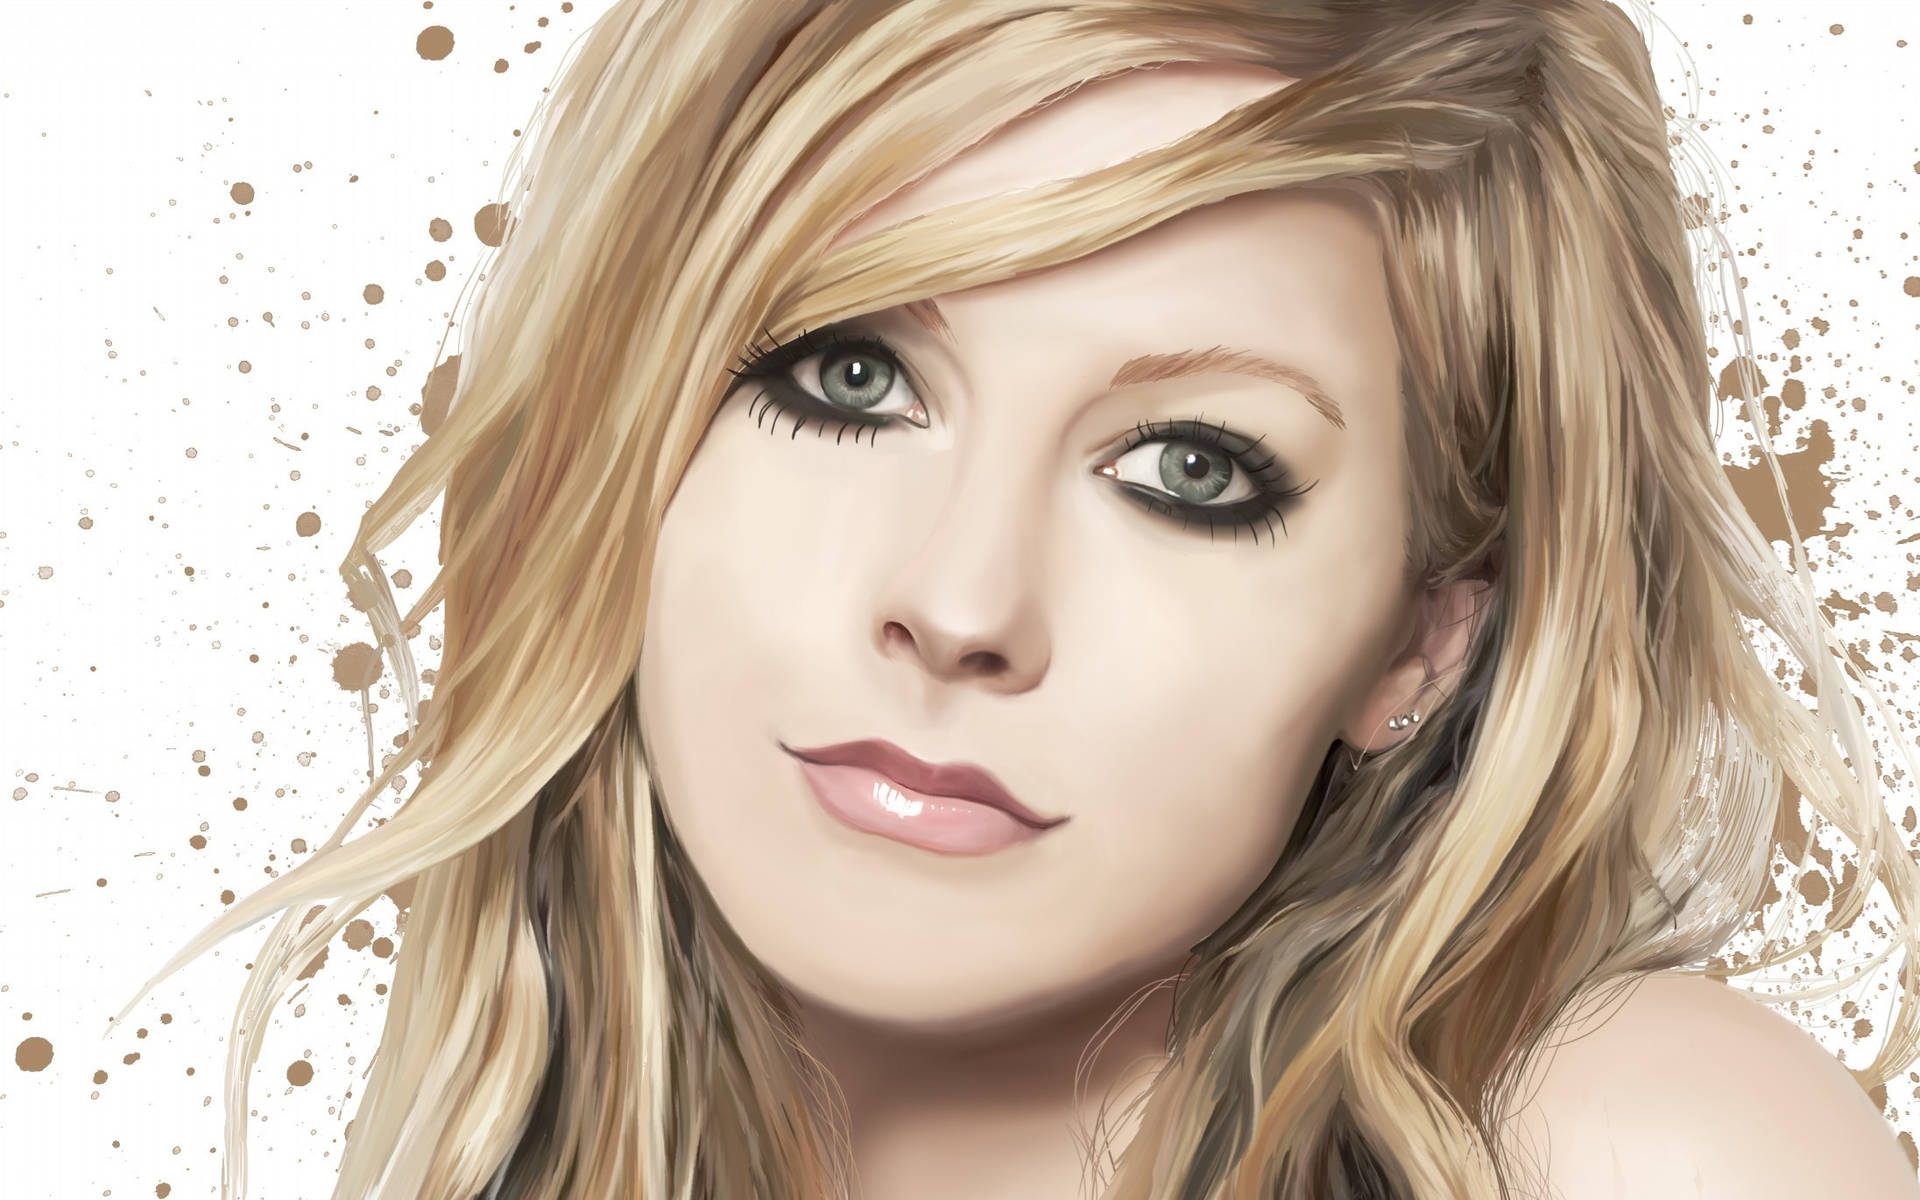 Avril Lavigne Digital Art